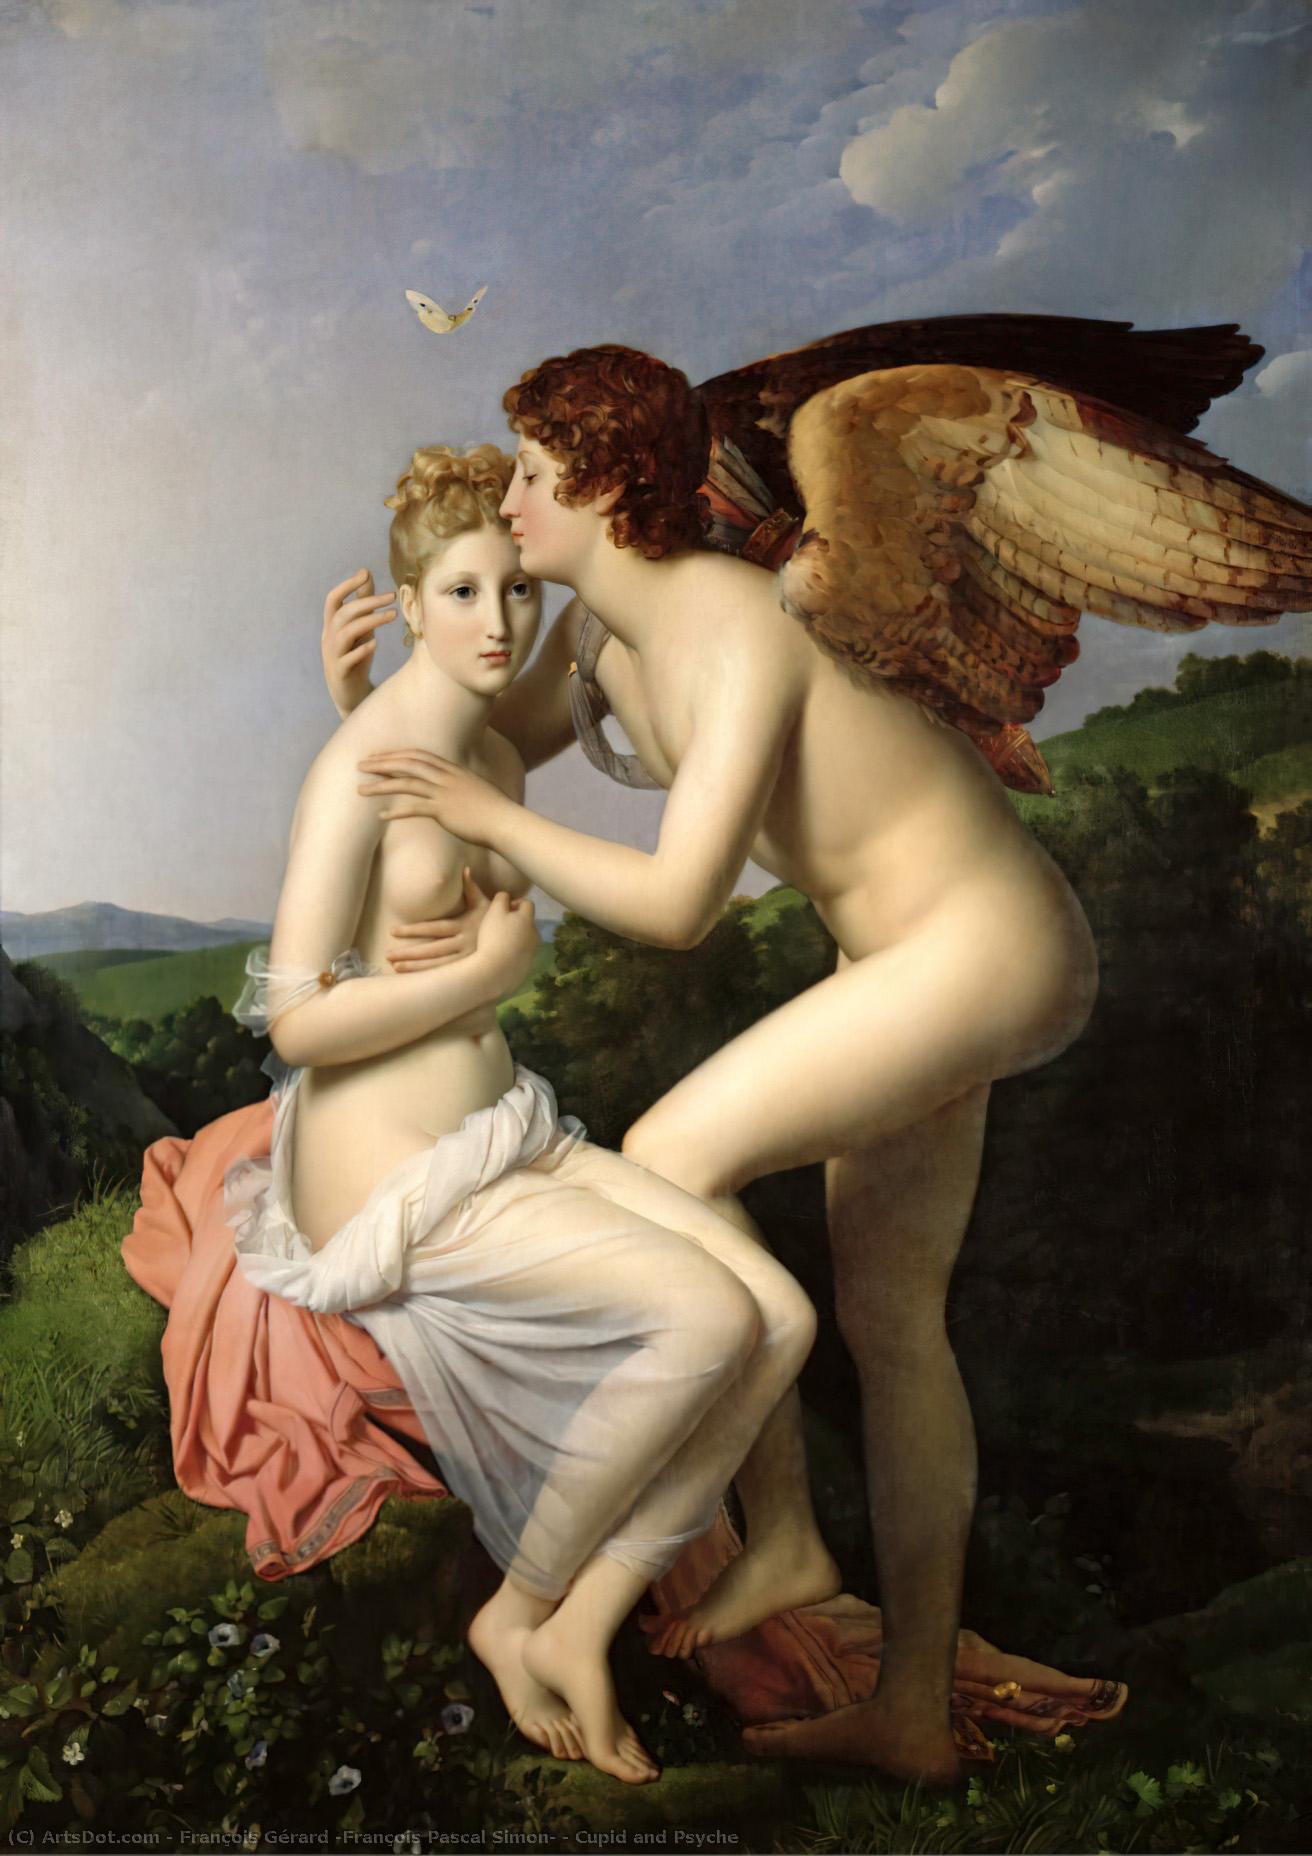 WikiOO.org - אנציקלופדיה לאמנויות יפות - ציור, יצירות אמנות François Gérard (François Pascal Simon) - Cupid and Psyche